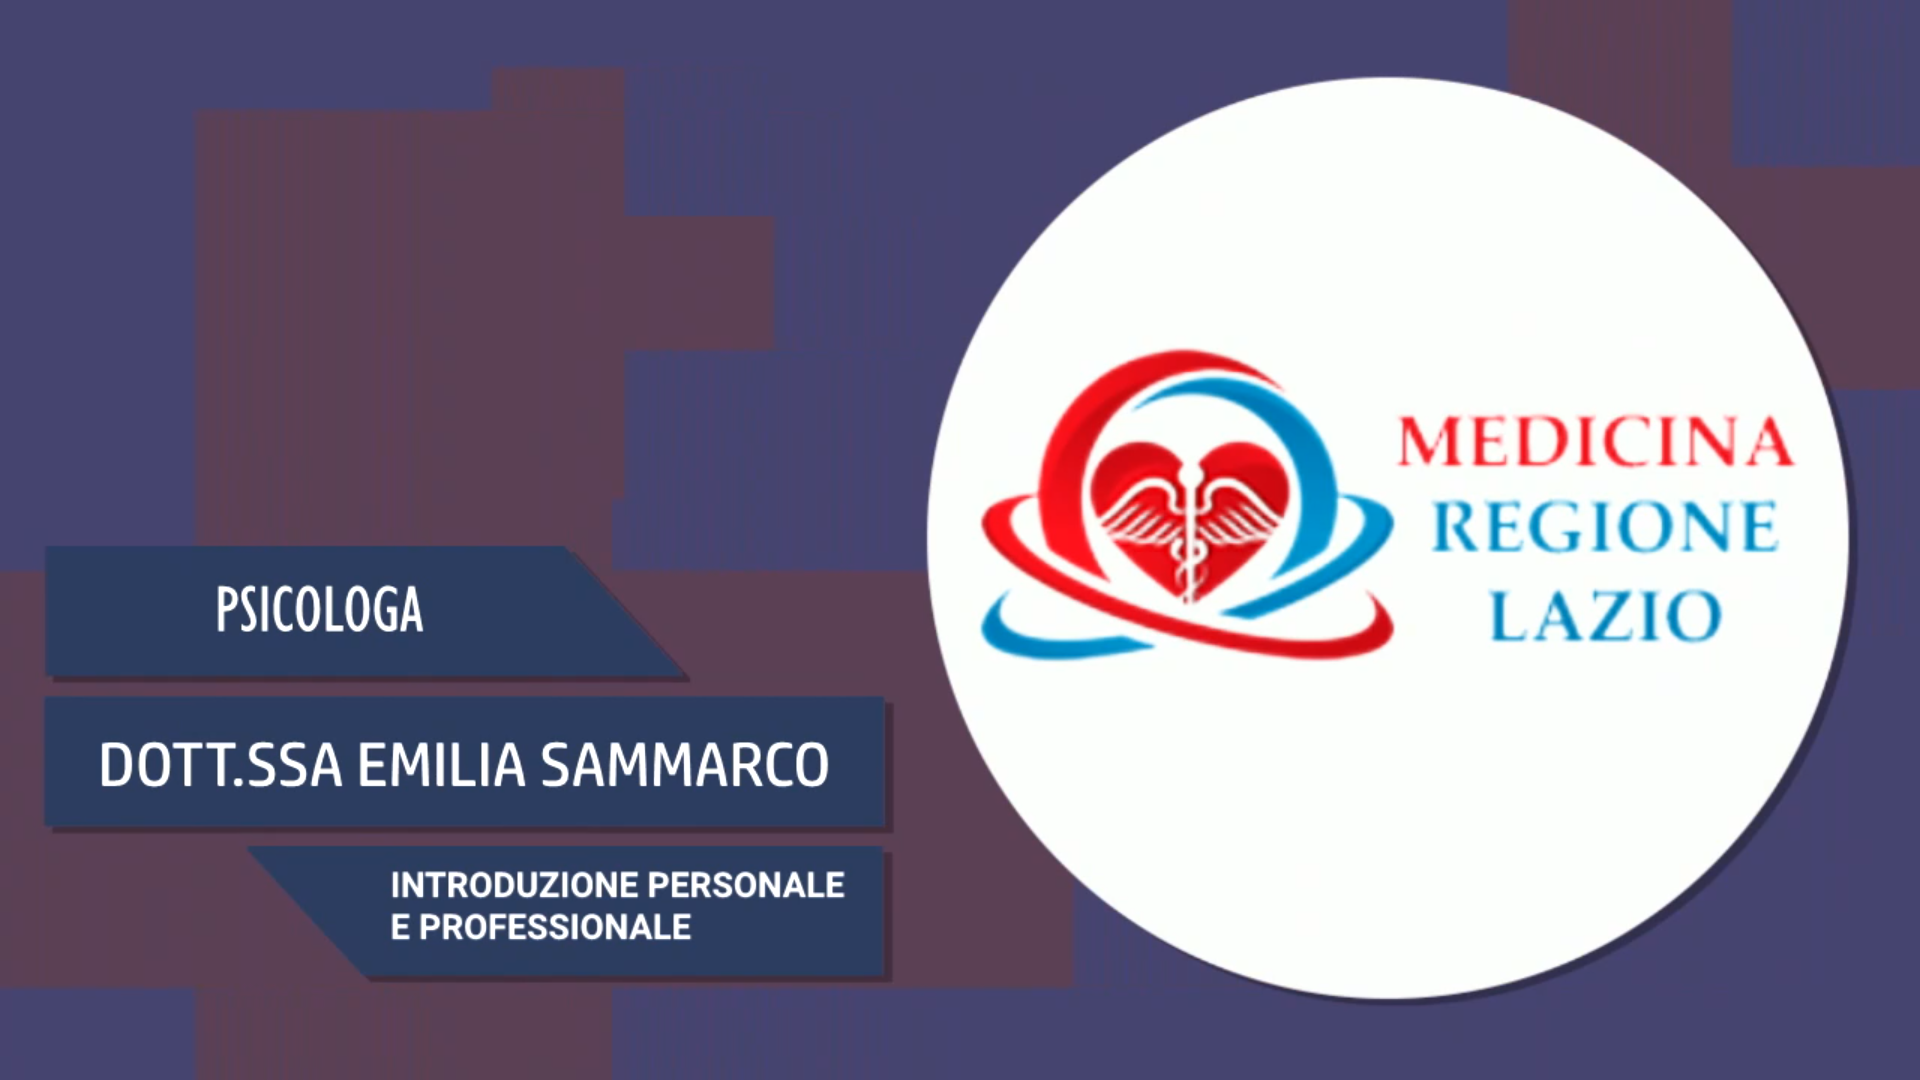 Intervista alla Dott.ssa Emilia Sammarco – La sua professione